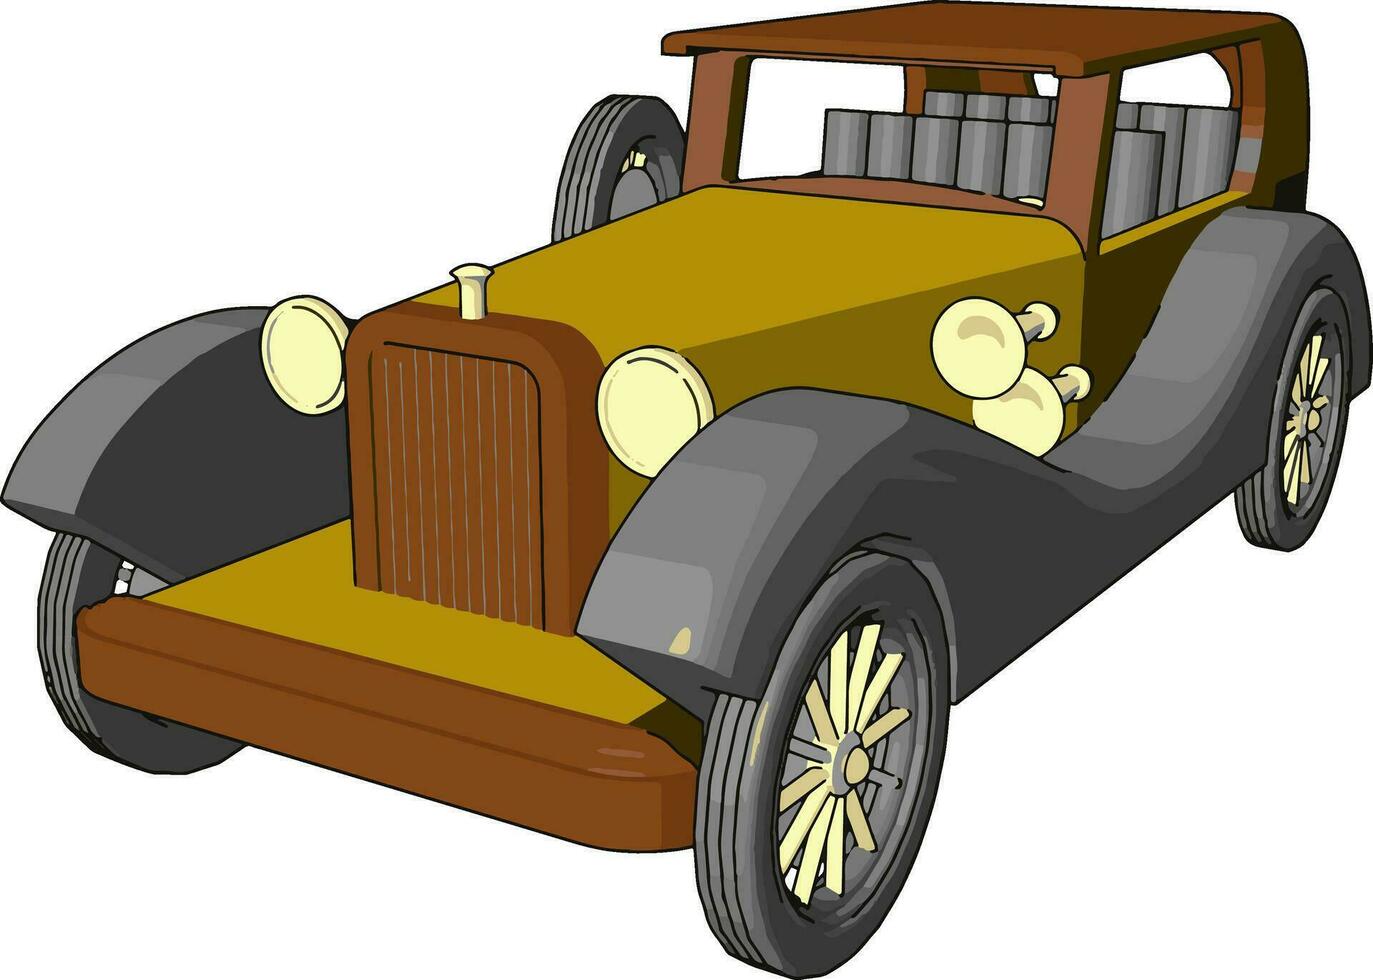 vieux jouet de voiture rétro, illustration, vecteur sur fond blanc.